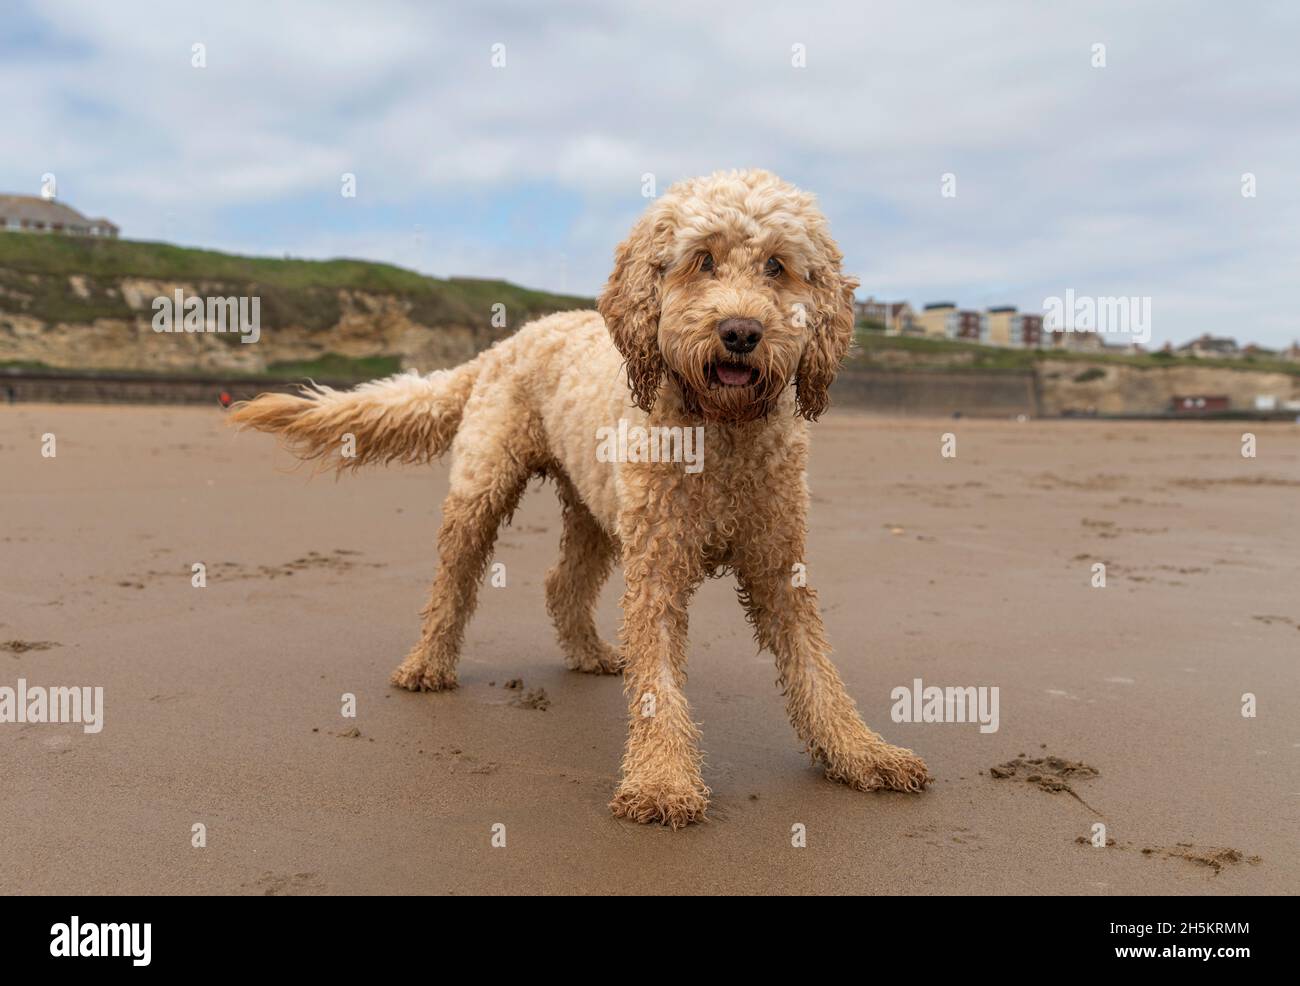 Un cocapoo blond se tient sur une plage regardant l'appareil photo; Whitburn, Tyne and Wear, Angleterre Banque D'Images